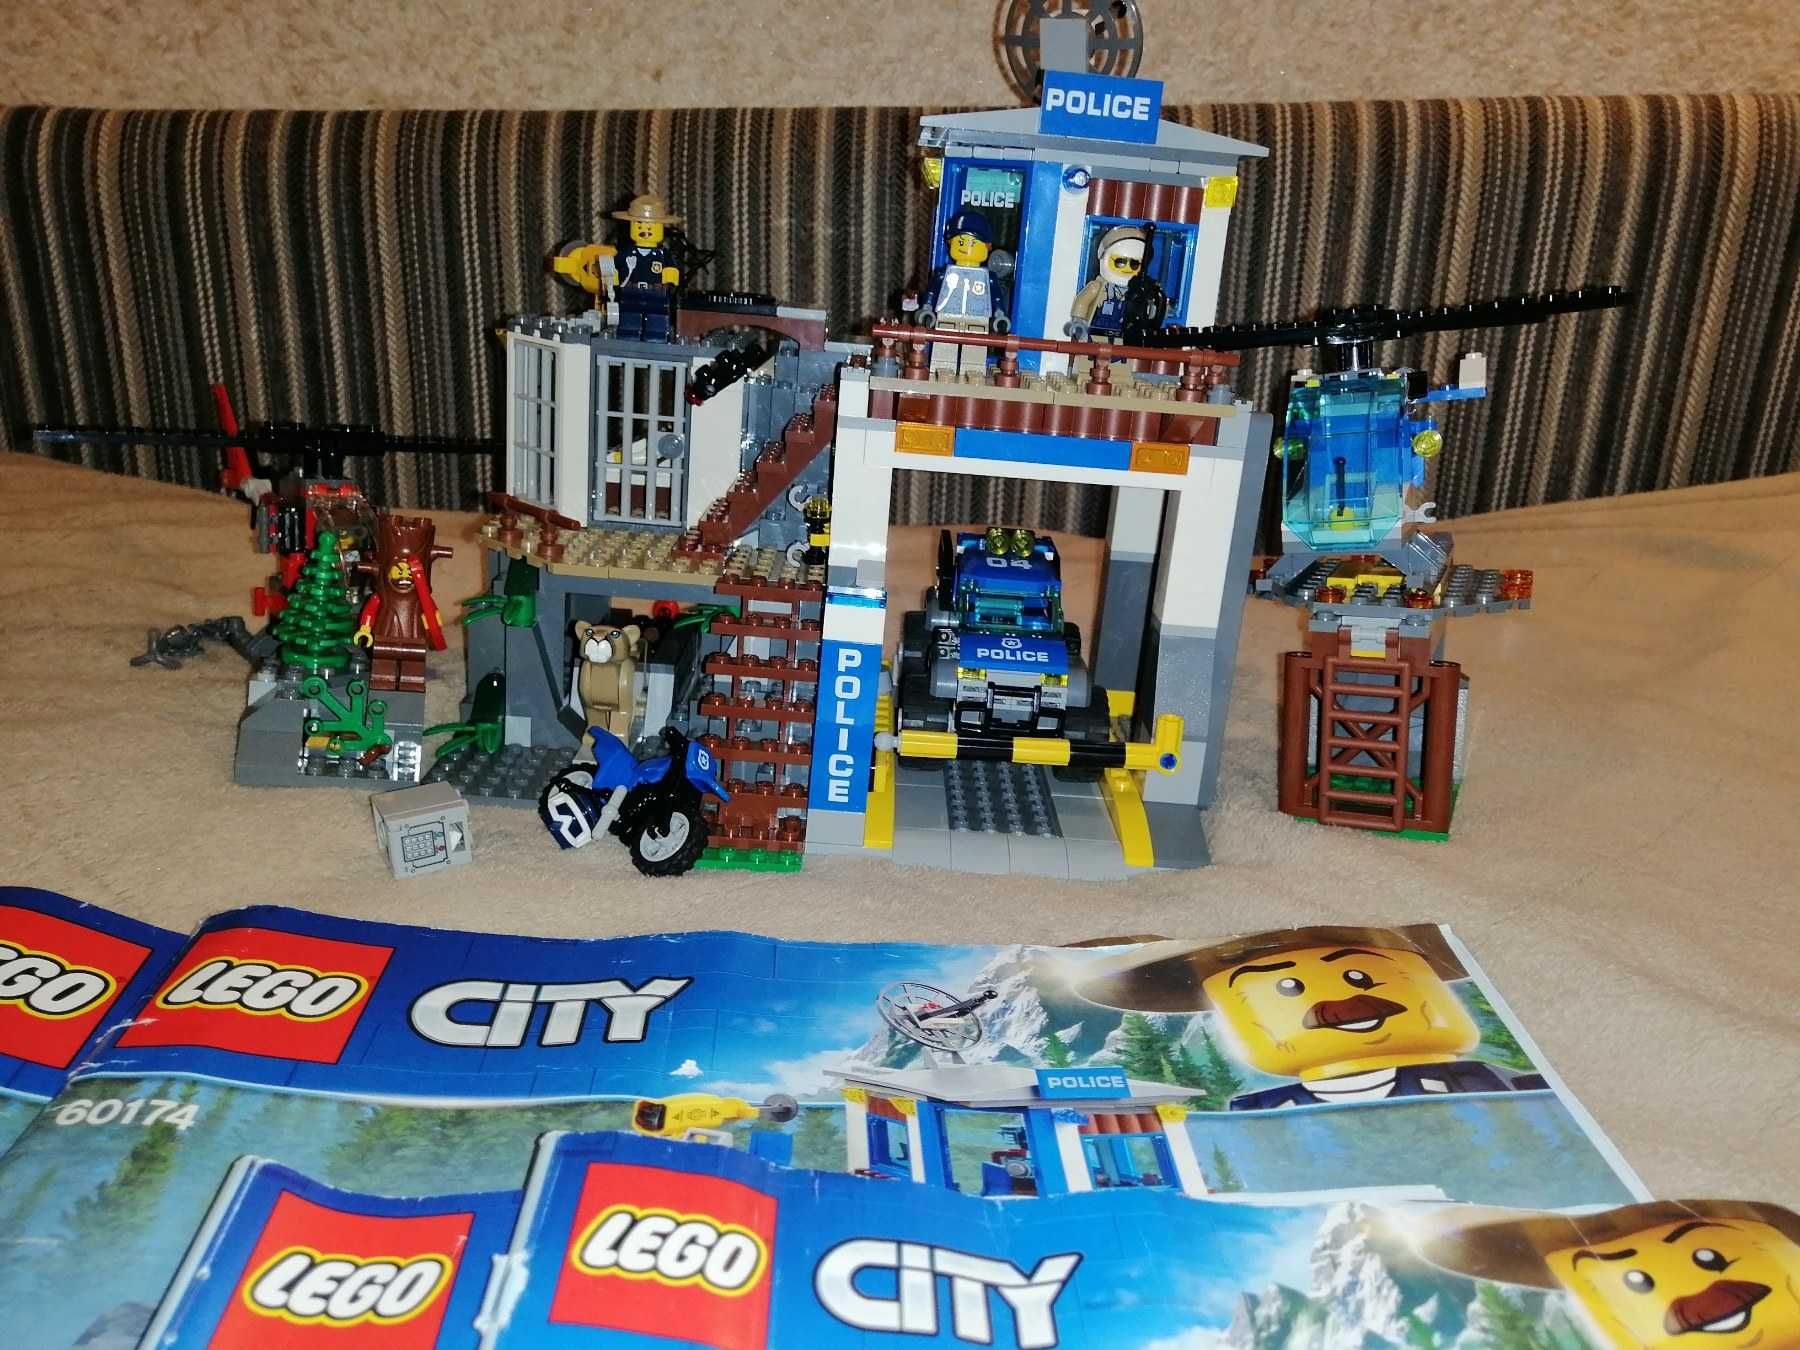 LEGO City Штаб-квартира горной полиции (60174)